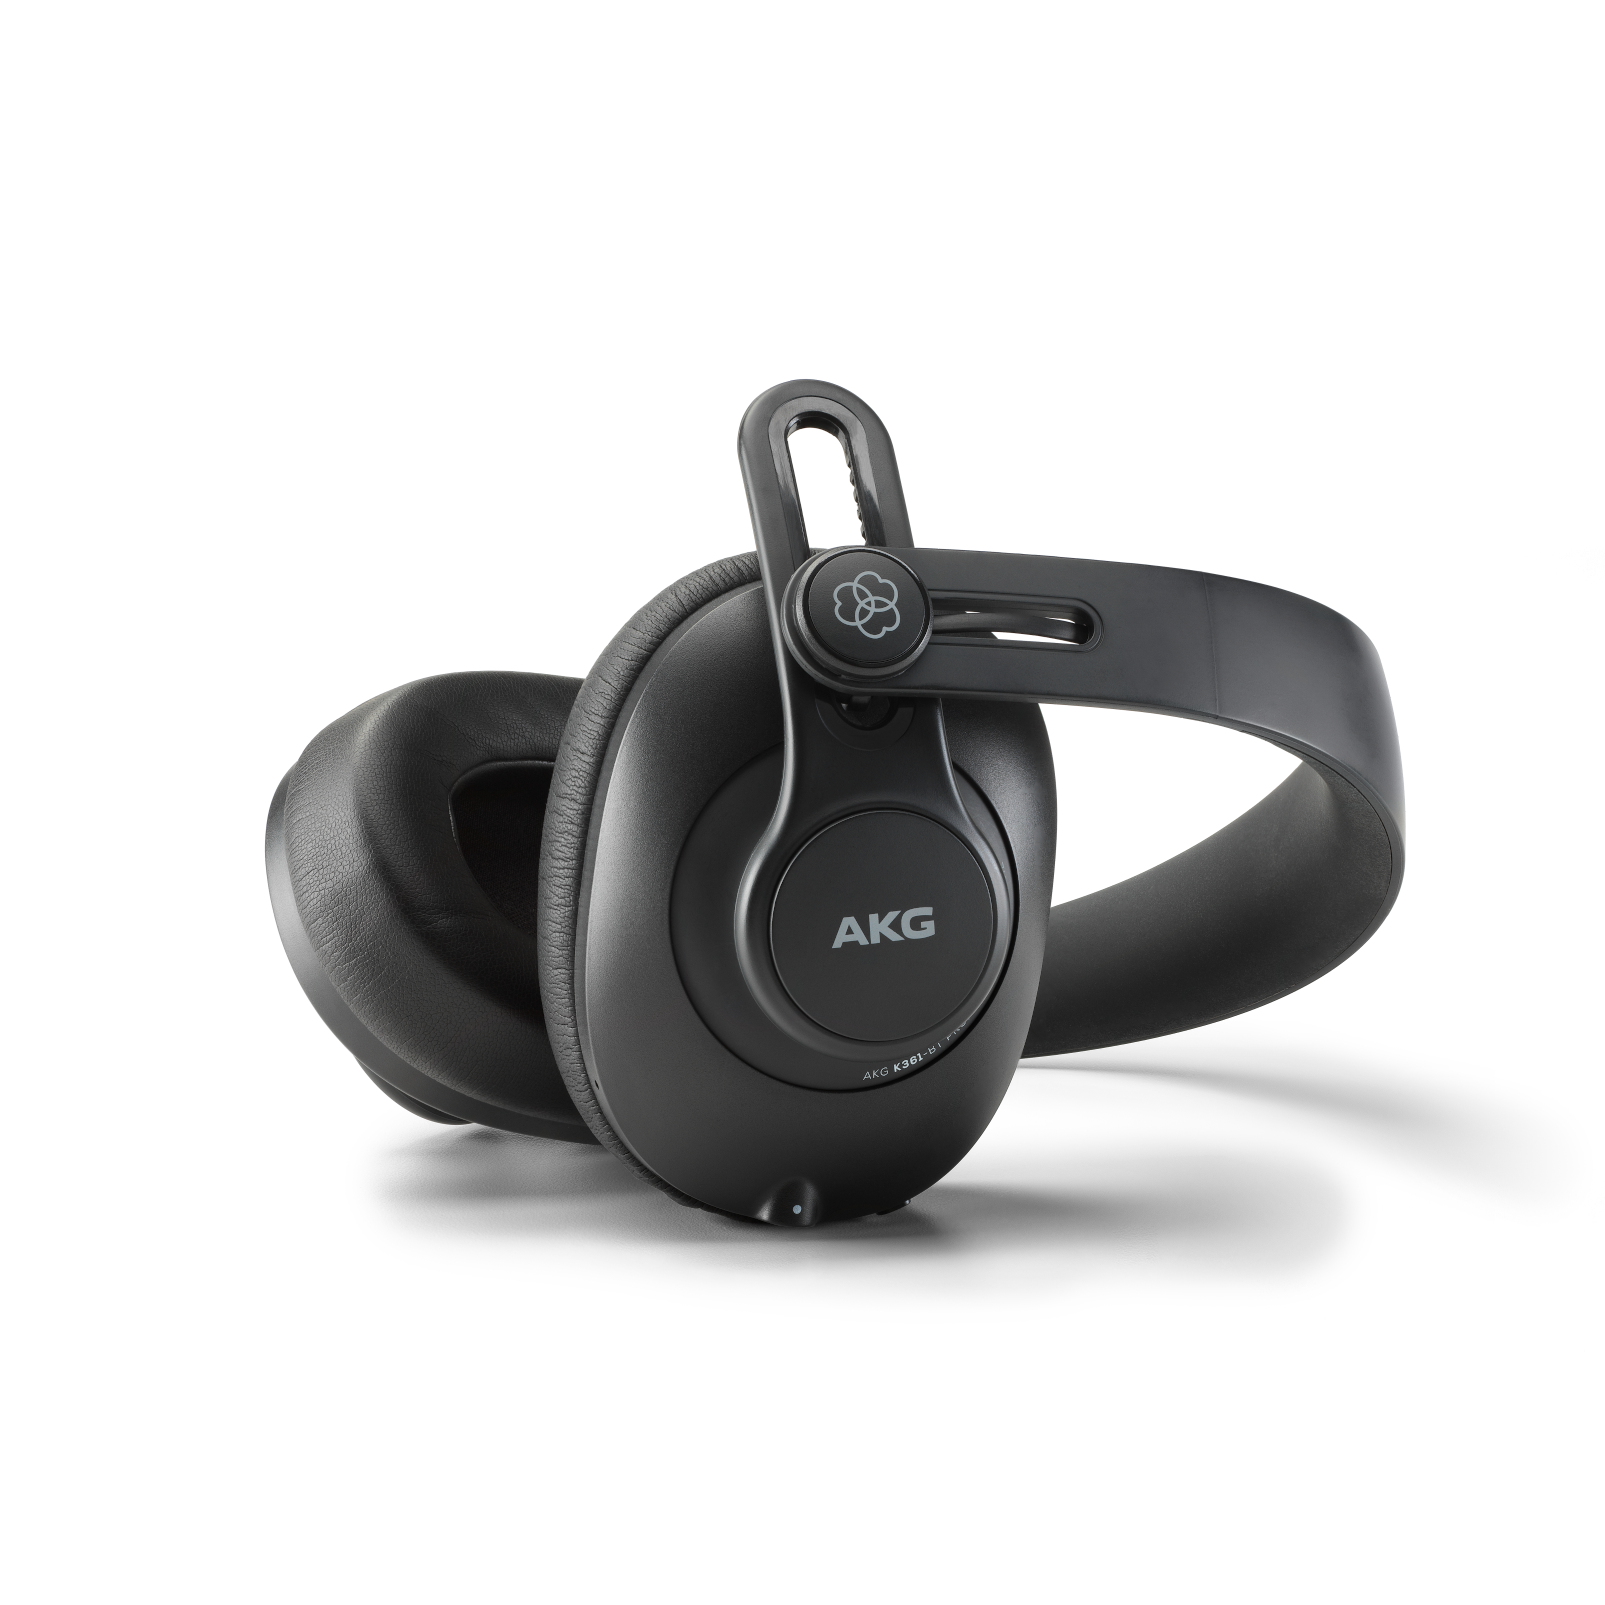 K361-BT - Black - Over-ear, closed-back, foldable studio headphones with Bluetooth - Detailshot 2